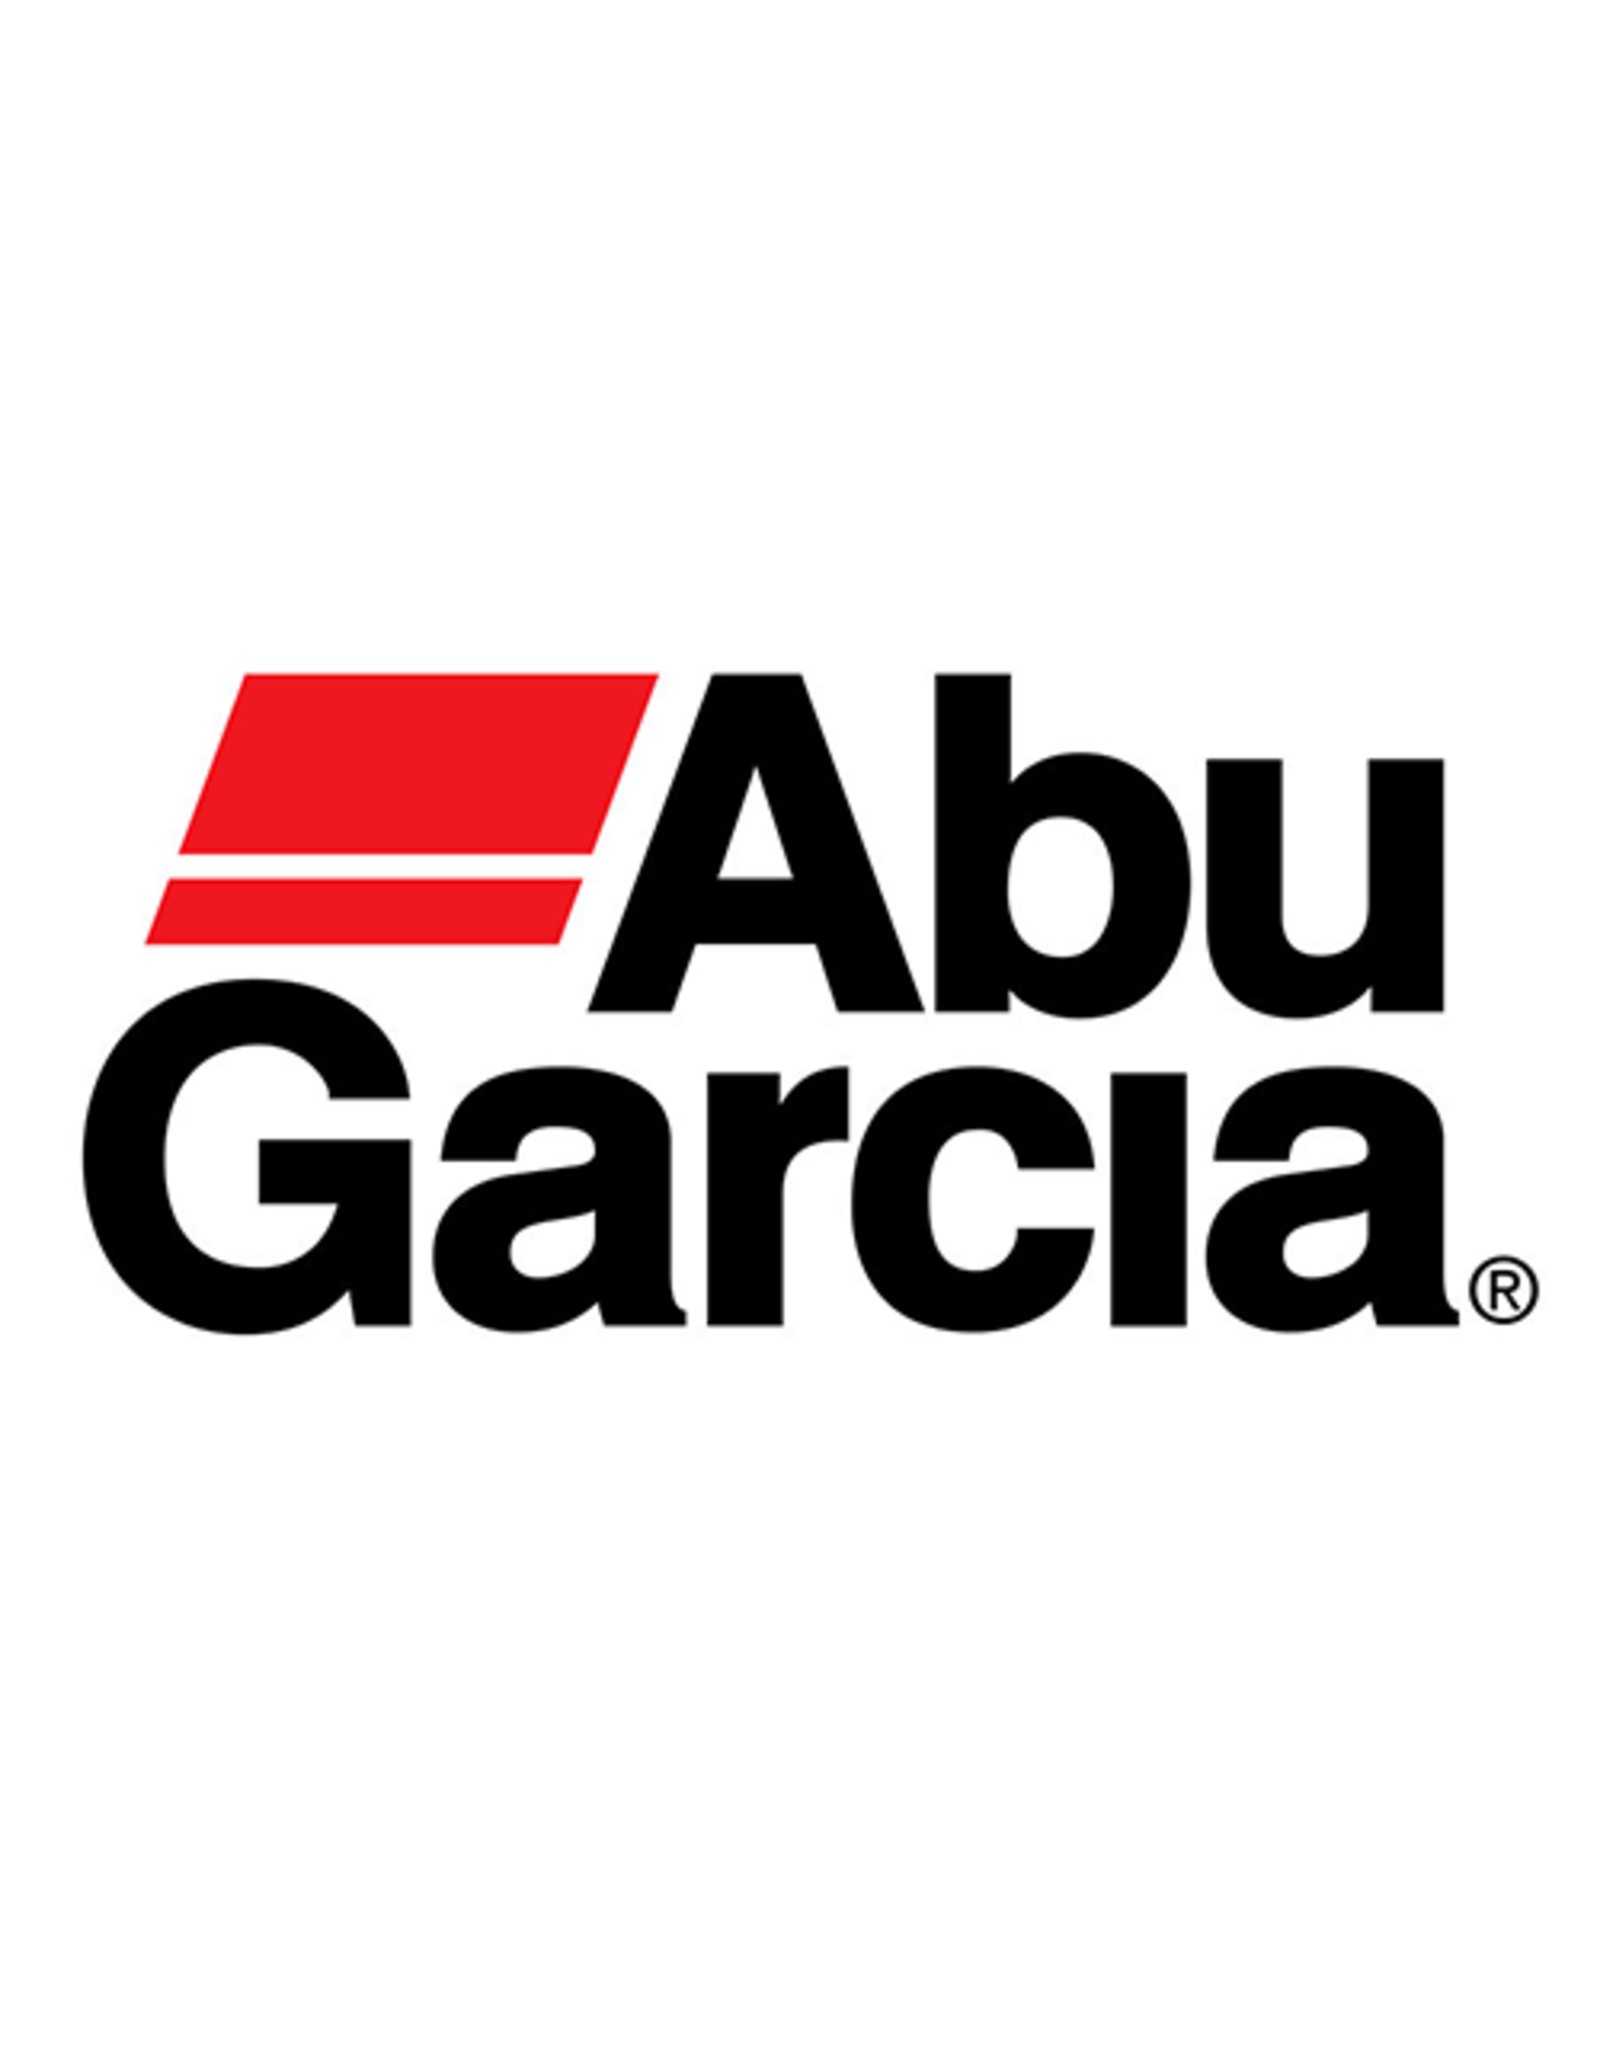 Abu Garcia 9083589  SPOOL/ NLA